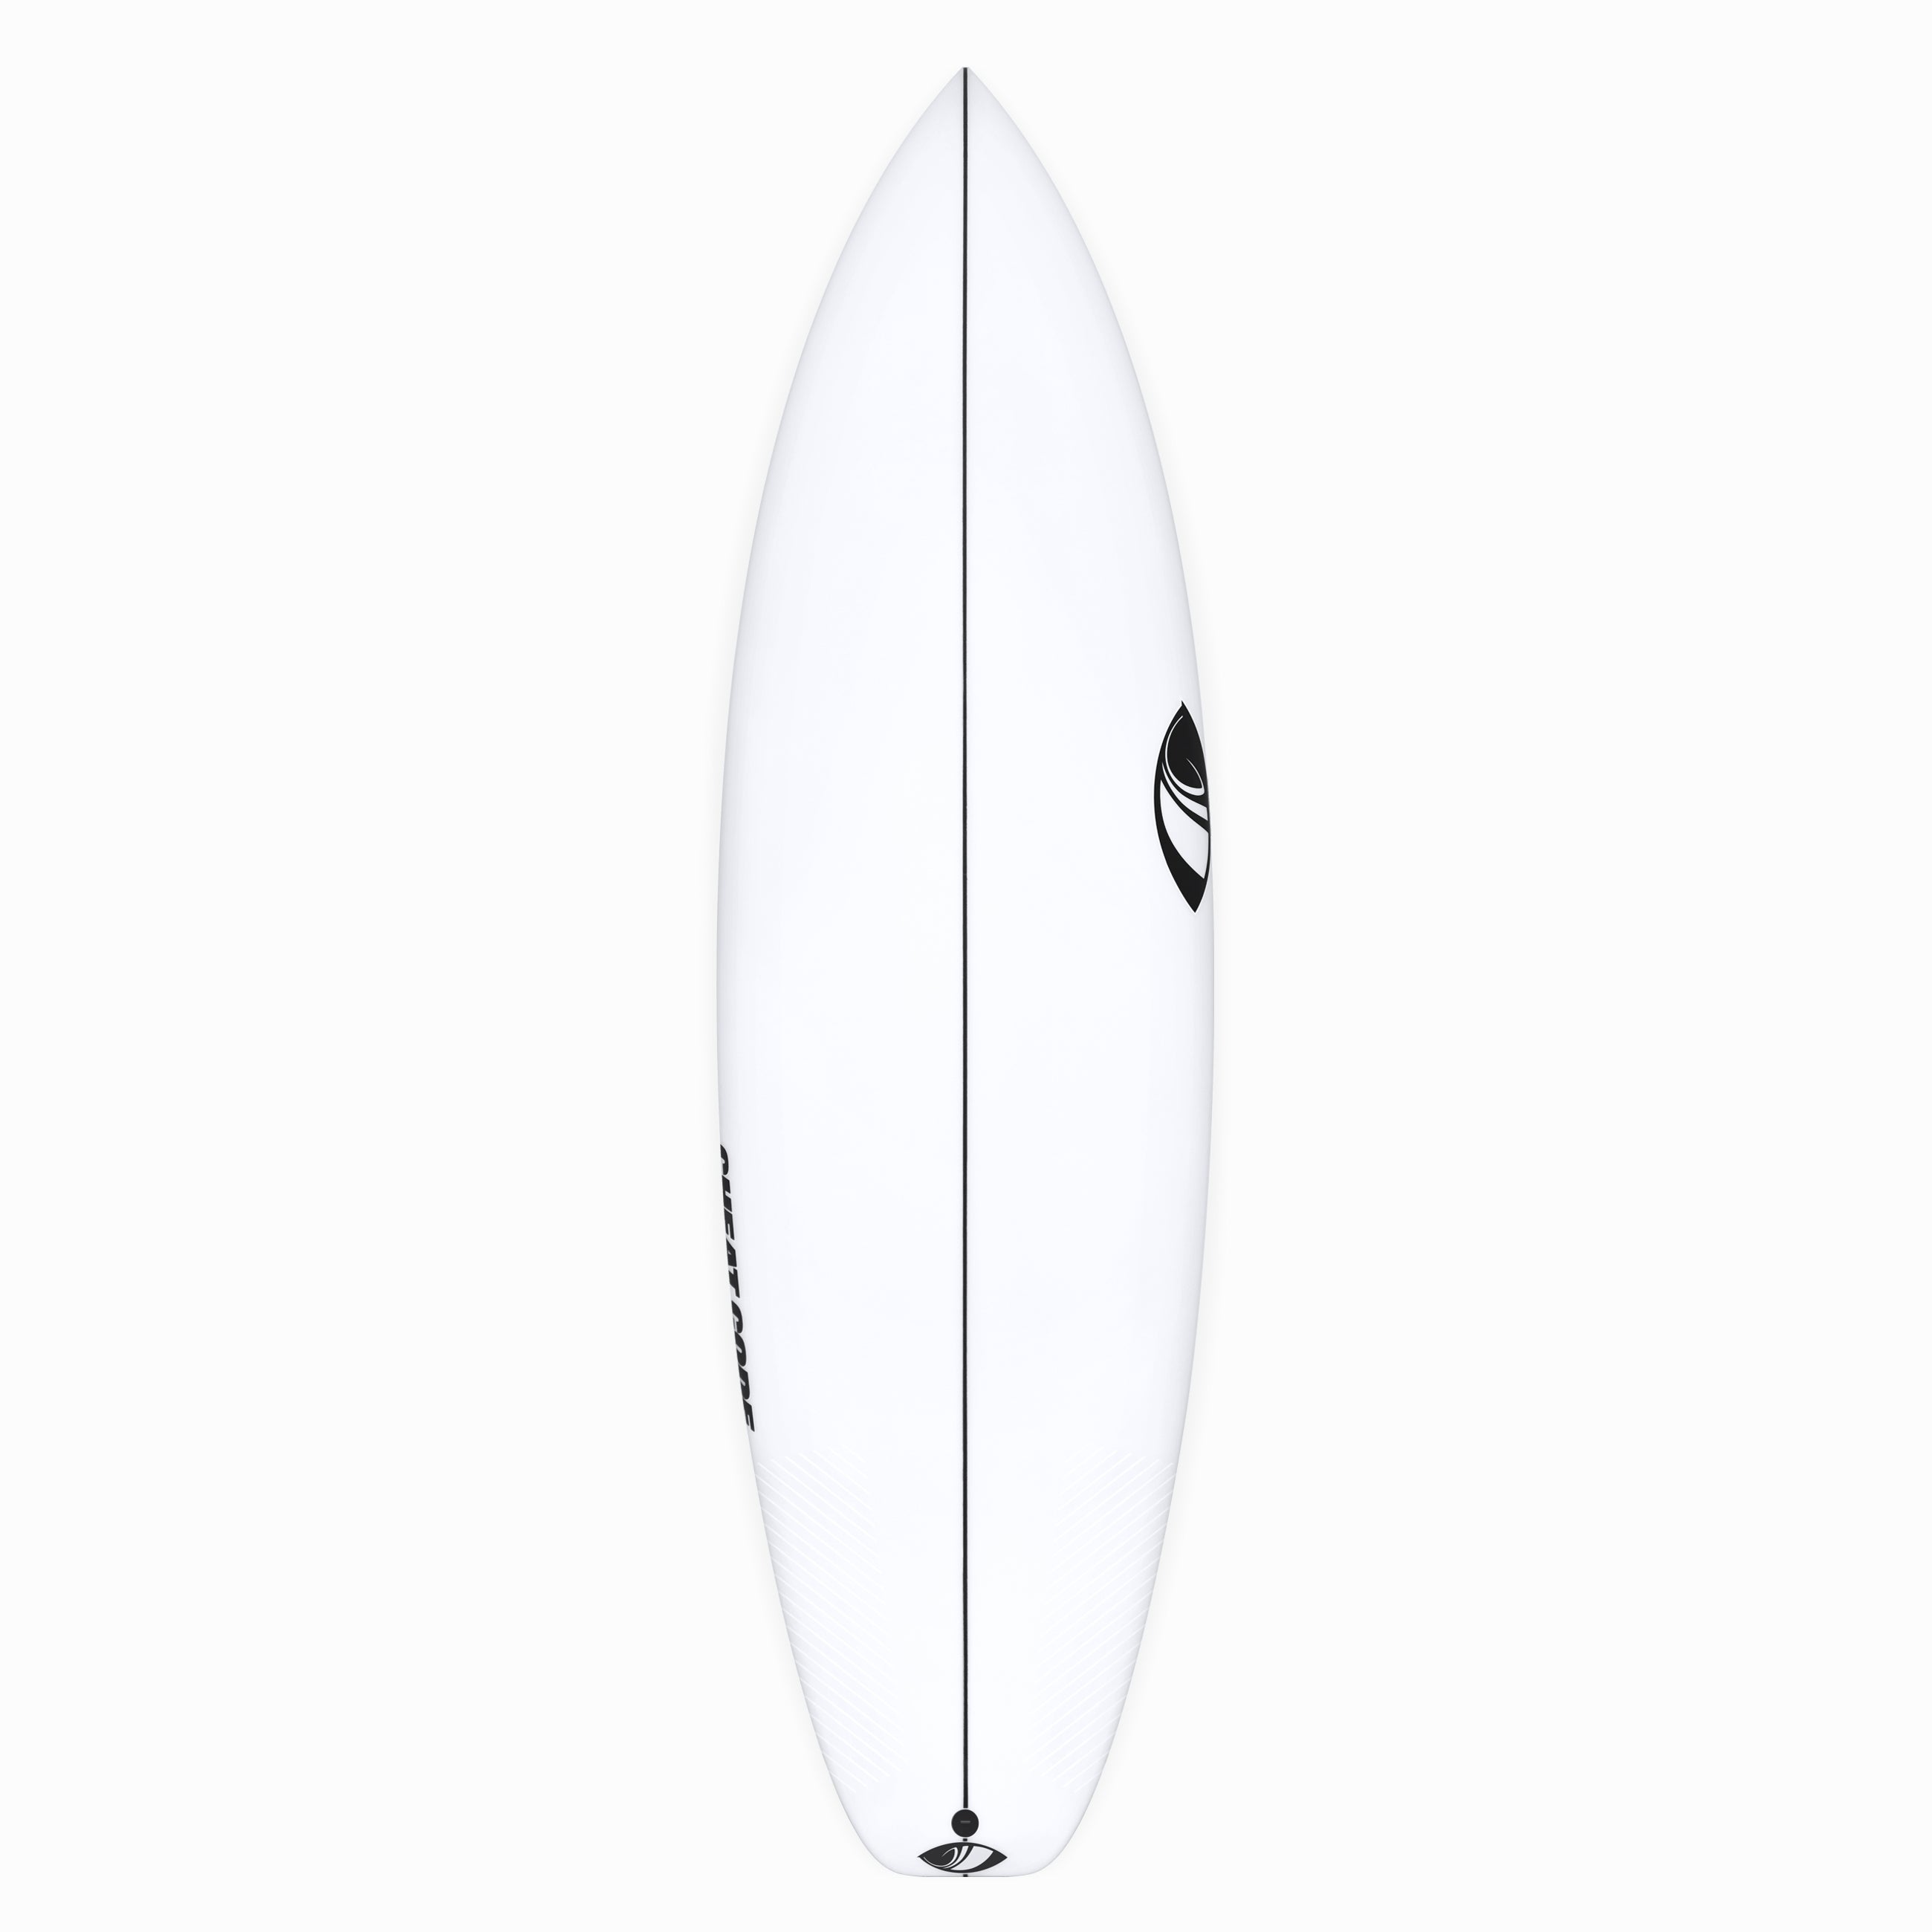 CHEAT CODE Surfboard | Sharp Eye Surfboards